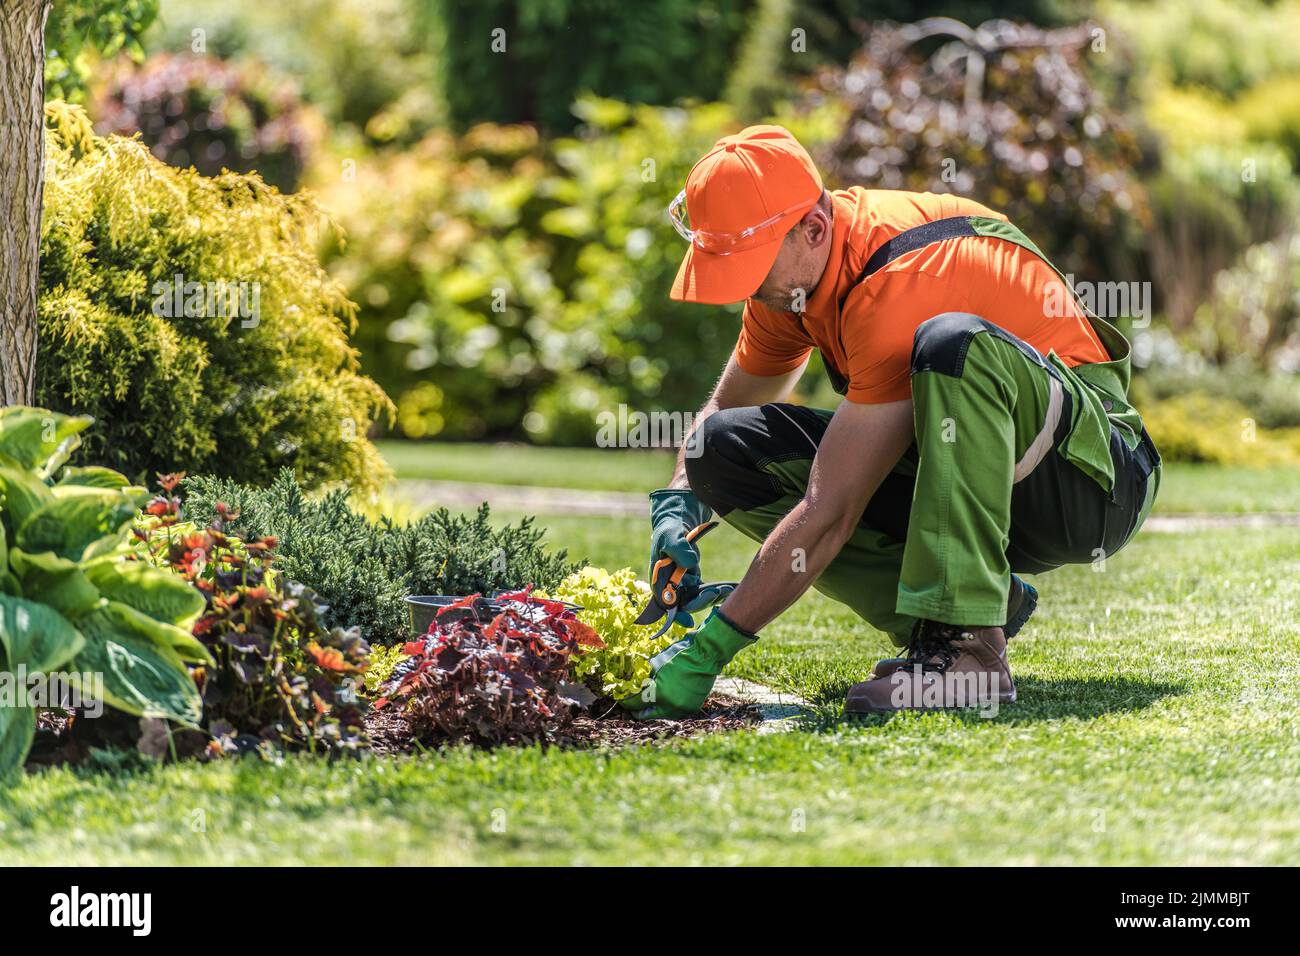 Professioneller Kaukasischer Landschaftsgärtner in grün-orange Arbeit Tragen Sie Trimmpflanzen auf dem Island Garden Bed mit seinem Gartenscheren-Werkzeug. Gard Stockfoto